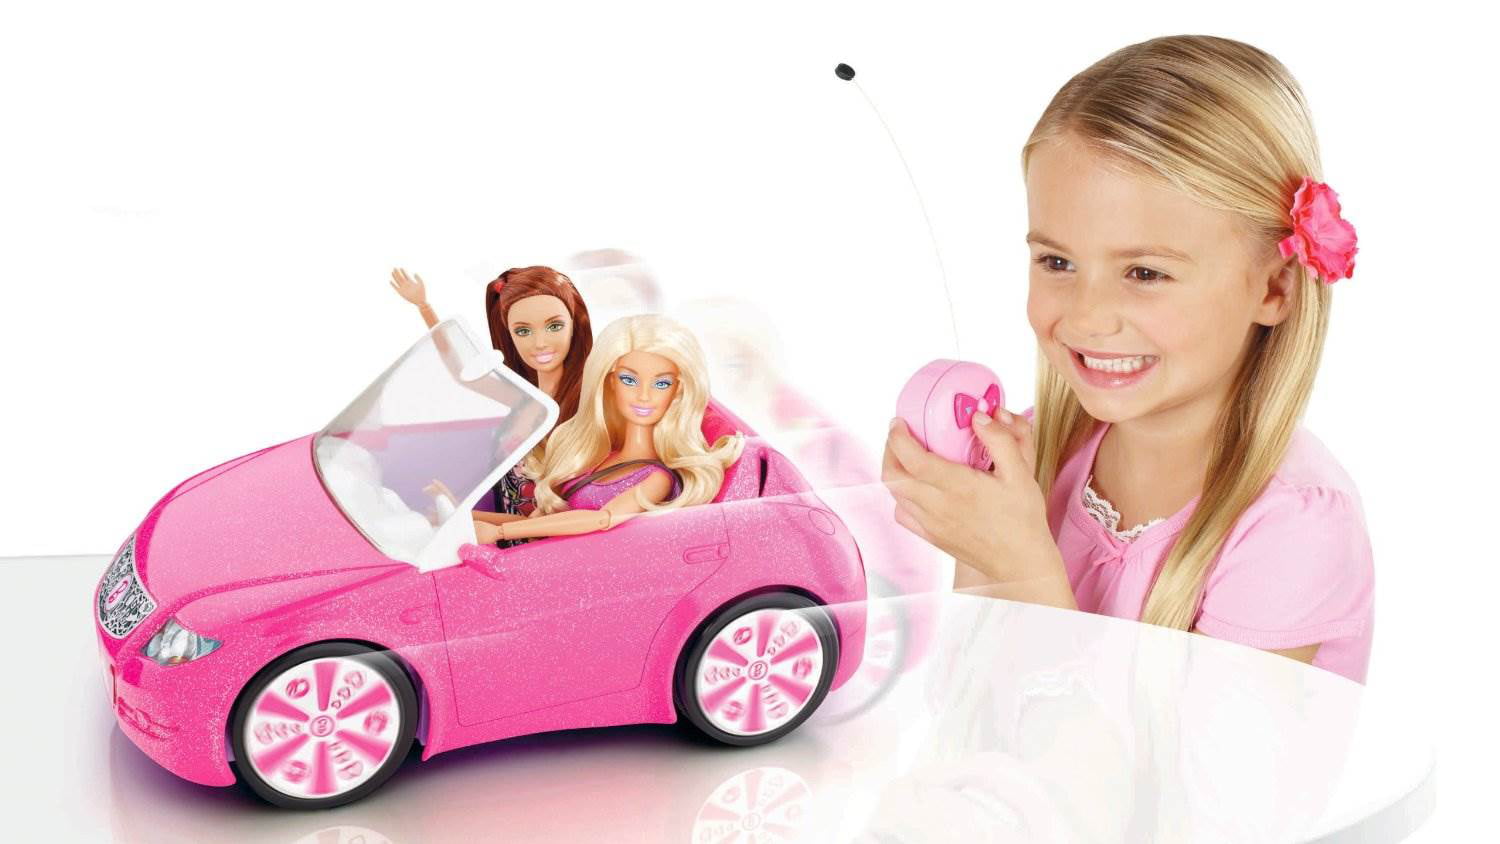 Mattel Barbie Dreamhouse RC Remote Control Convertible Vehicle | X5450 - Walmart.com